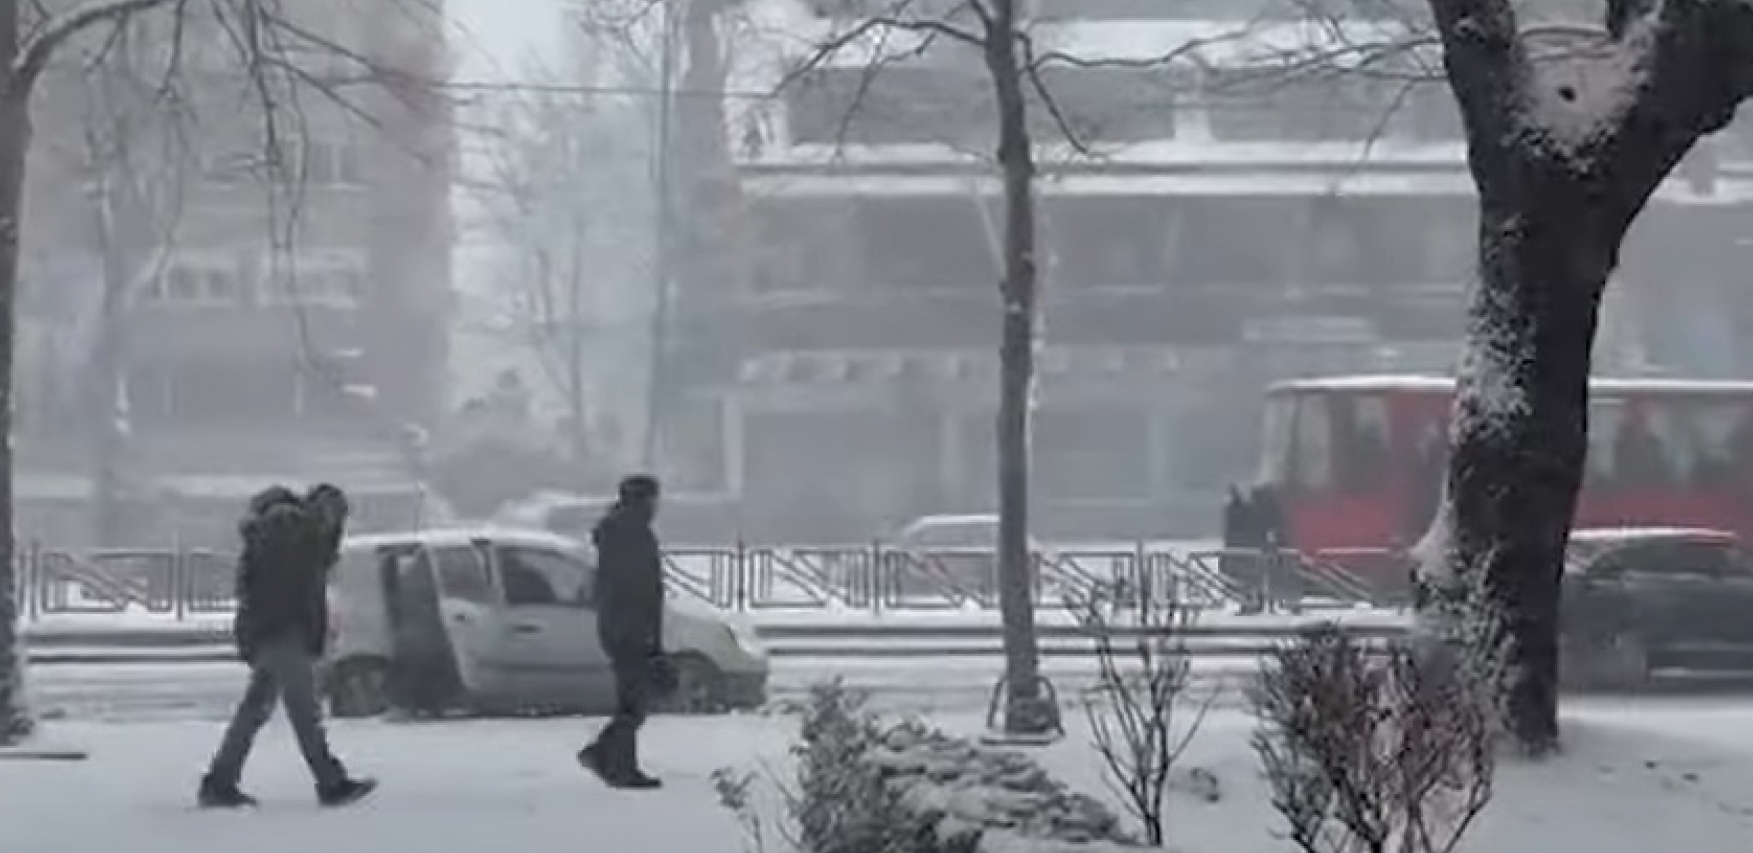 KO NE MORA, NEKA NE IZLAZI Pogledajte kako trenutno izgleda Beograd pod velikim naletom snežnih padavina (VIDEO)